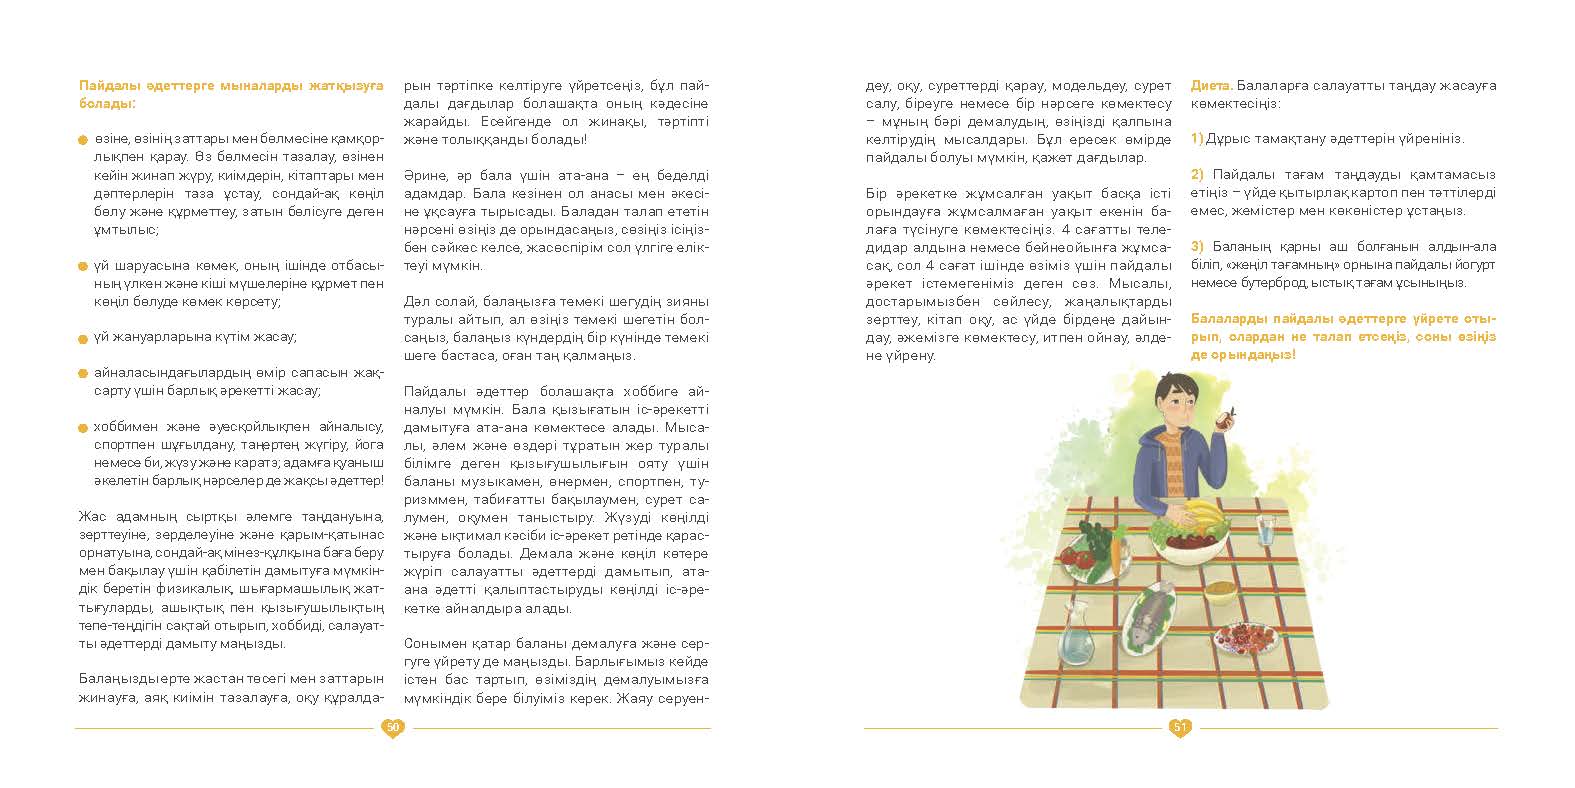 EVAC brochure KAZ (26).jpg